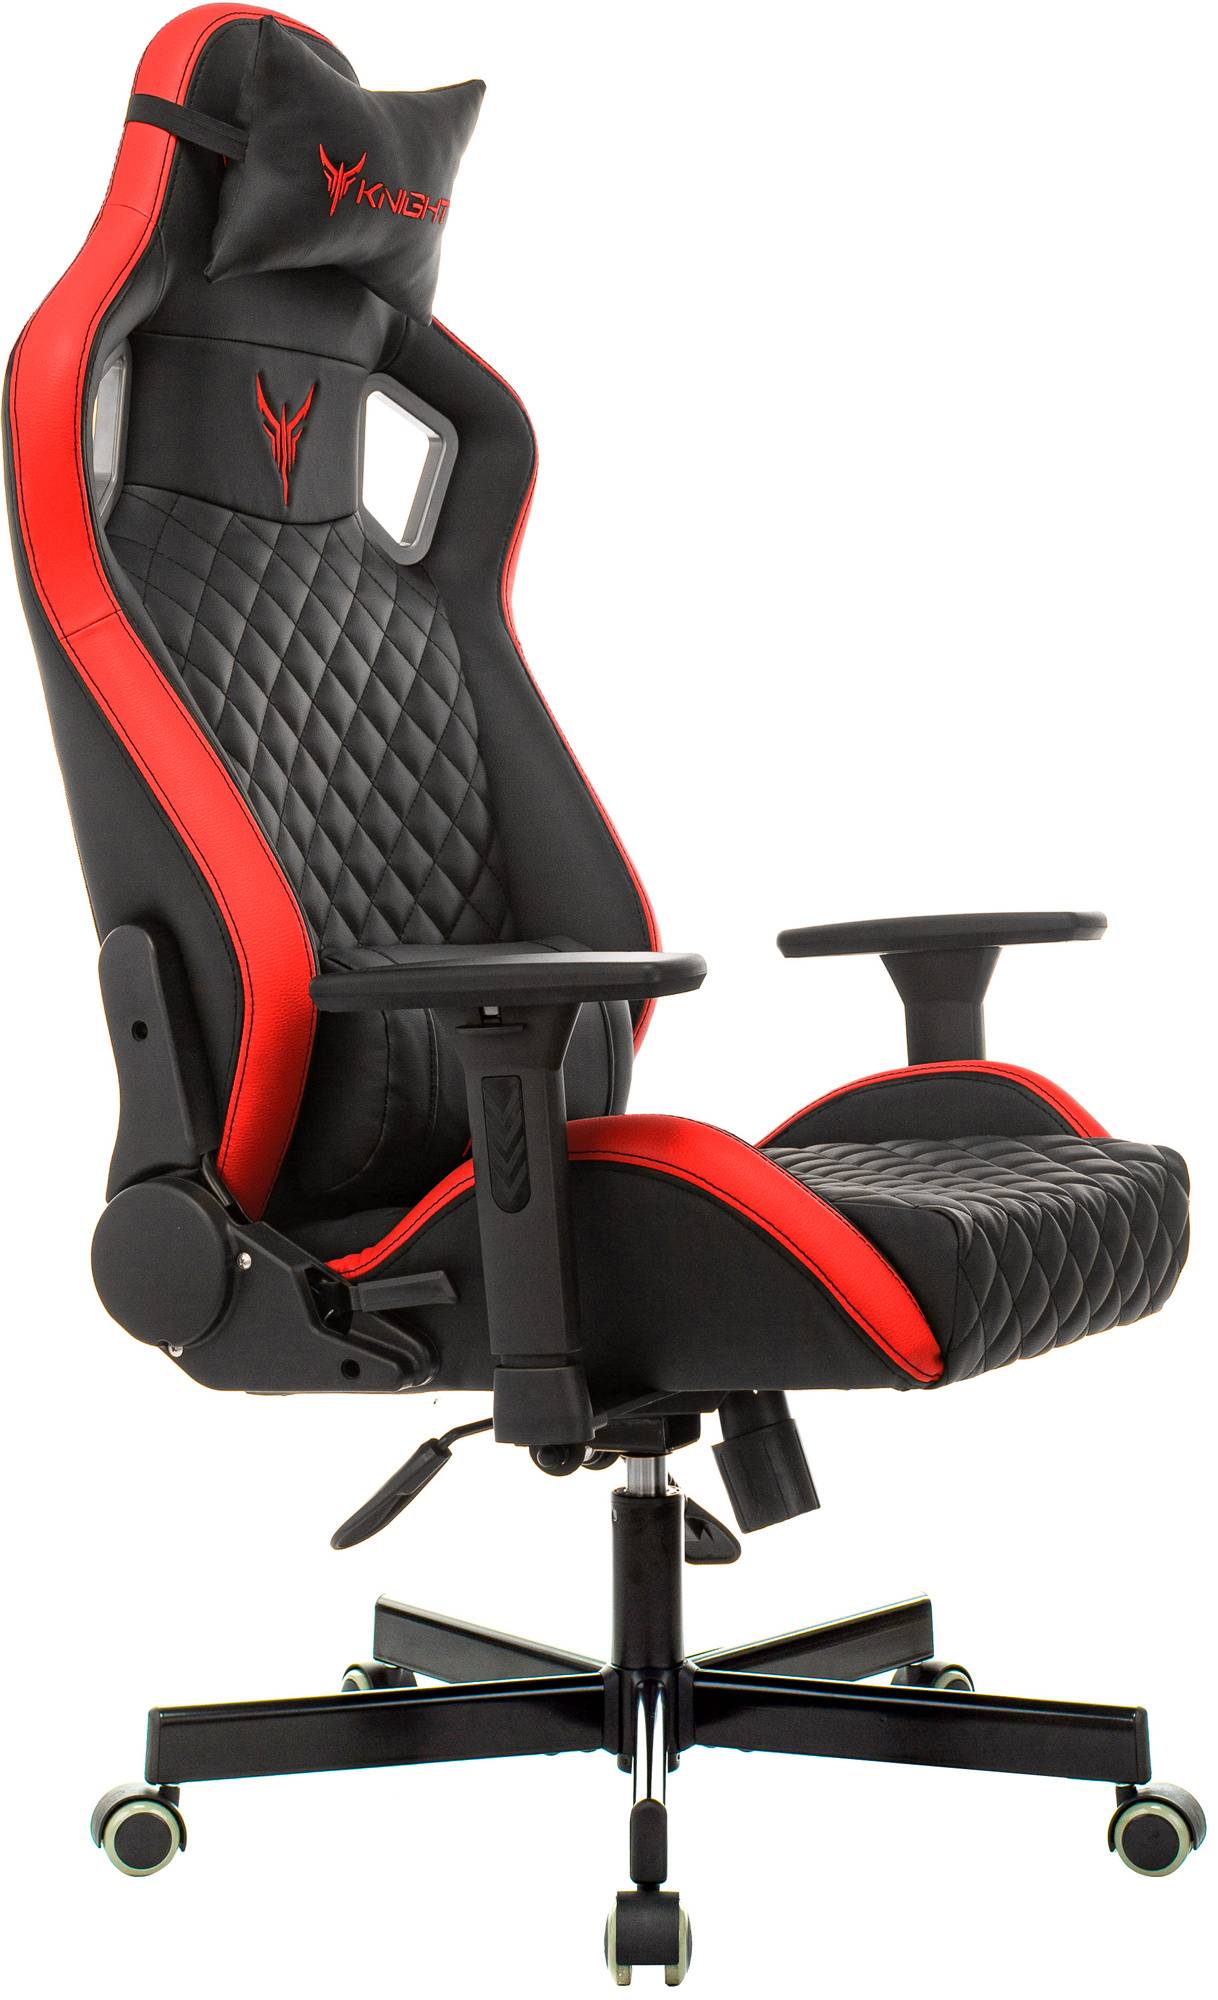 Кресло игровое Knight Outrider, обивка: эко.кожа, цвет: черный/красный, рисунок ромбик